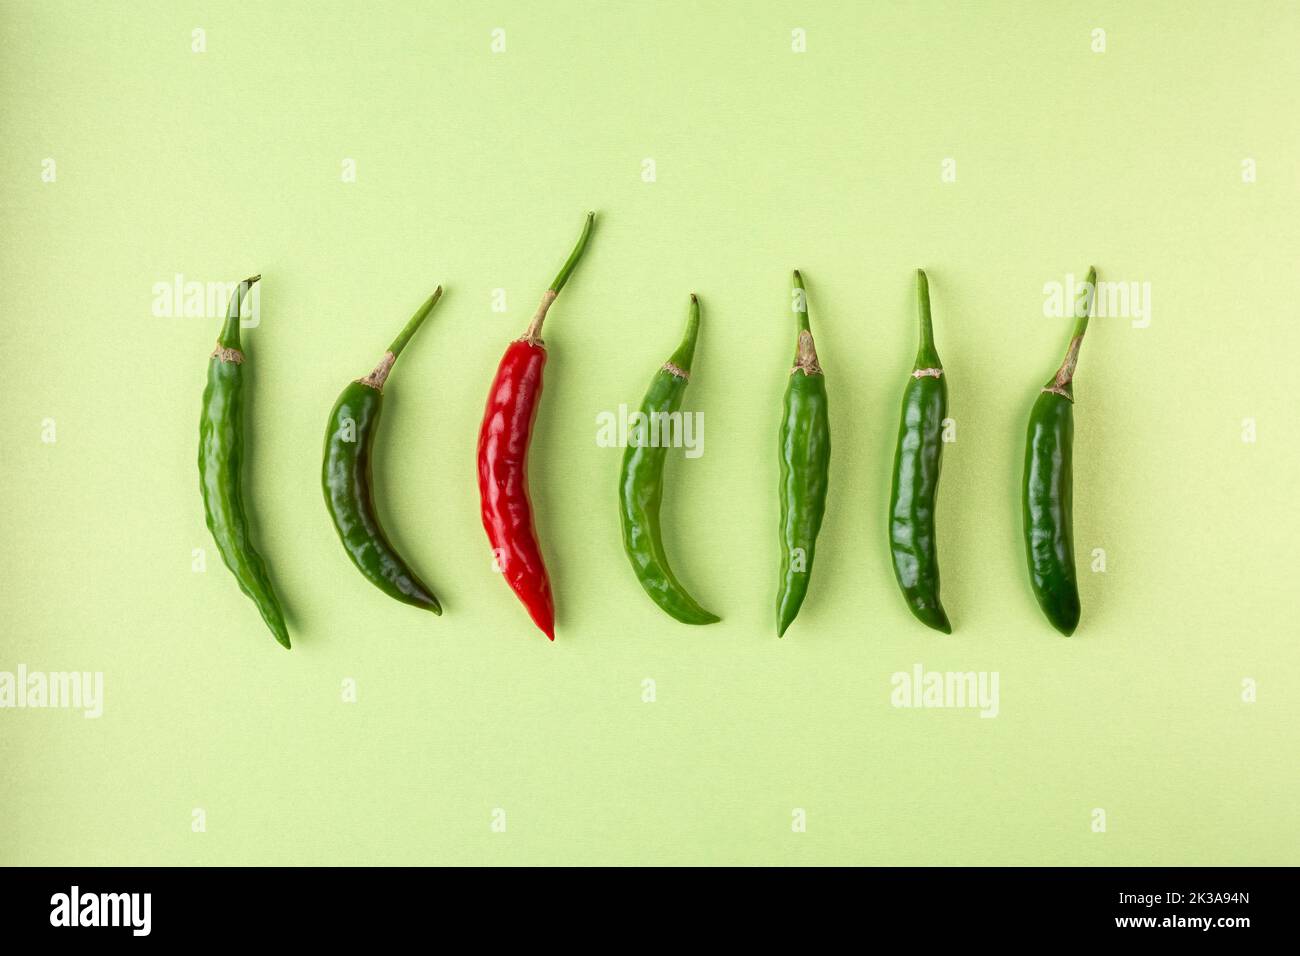 Grüne und rote Chilis auf körnigen strukturierten hellgrünen Hintergrund angeordnet, reifen und unreifen gemeinsamen Gemüse für ihren würzigen Geschmack verwendet Stockfoto